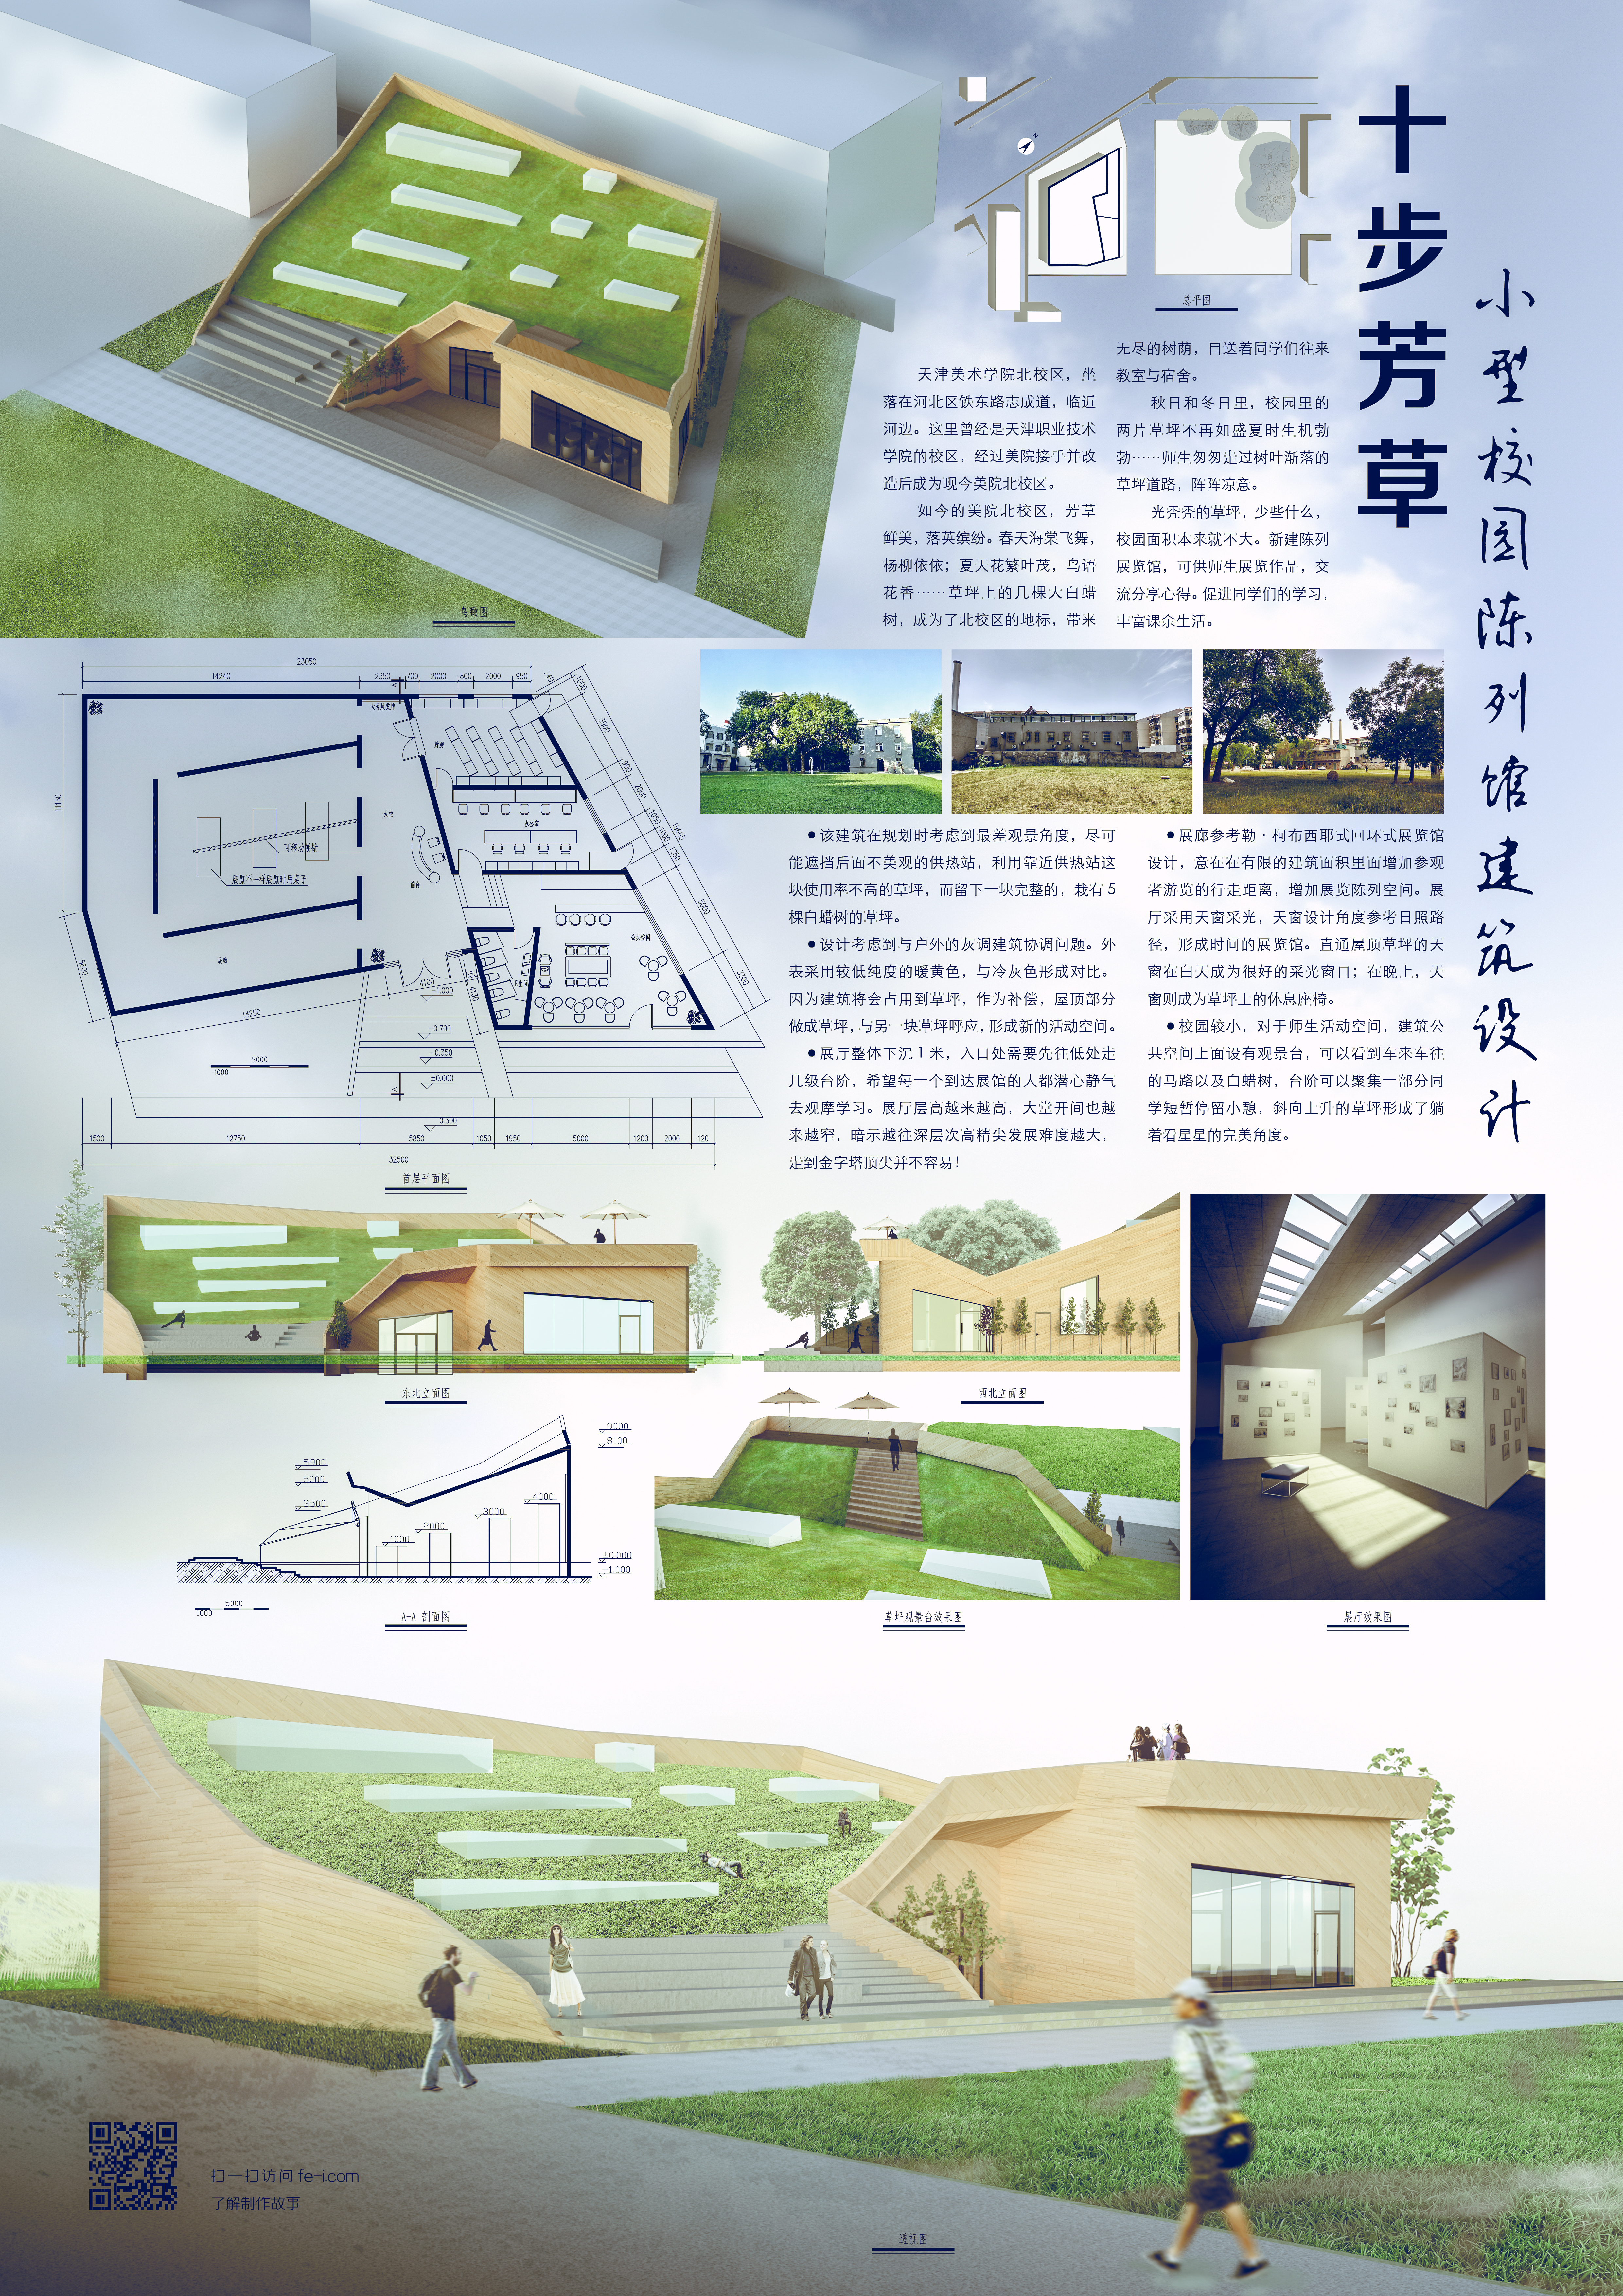 《十步芳草——小型校园陈列馆建筑设计》